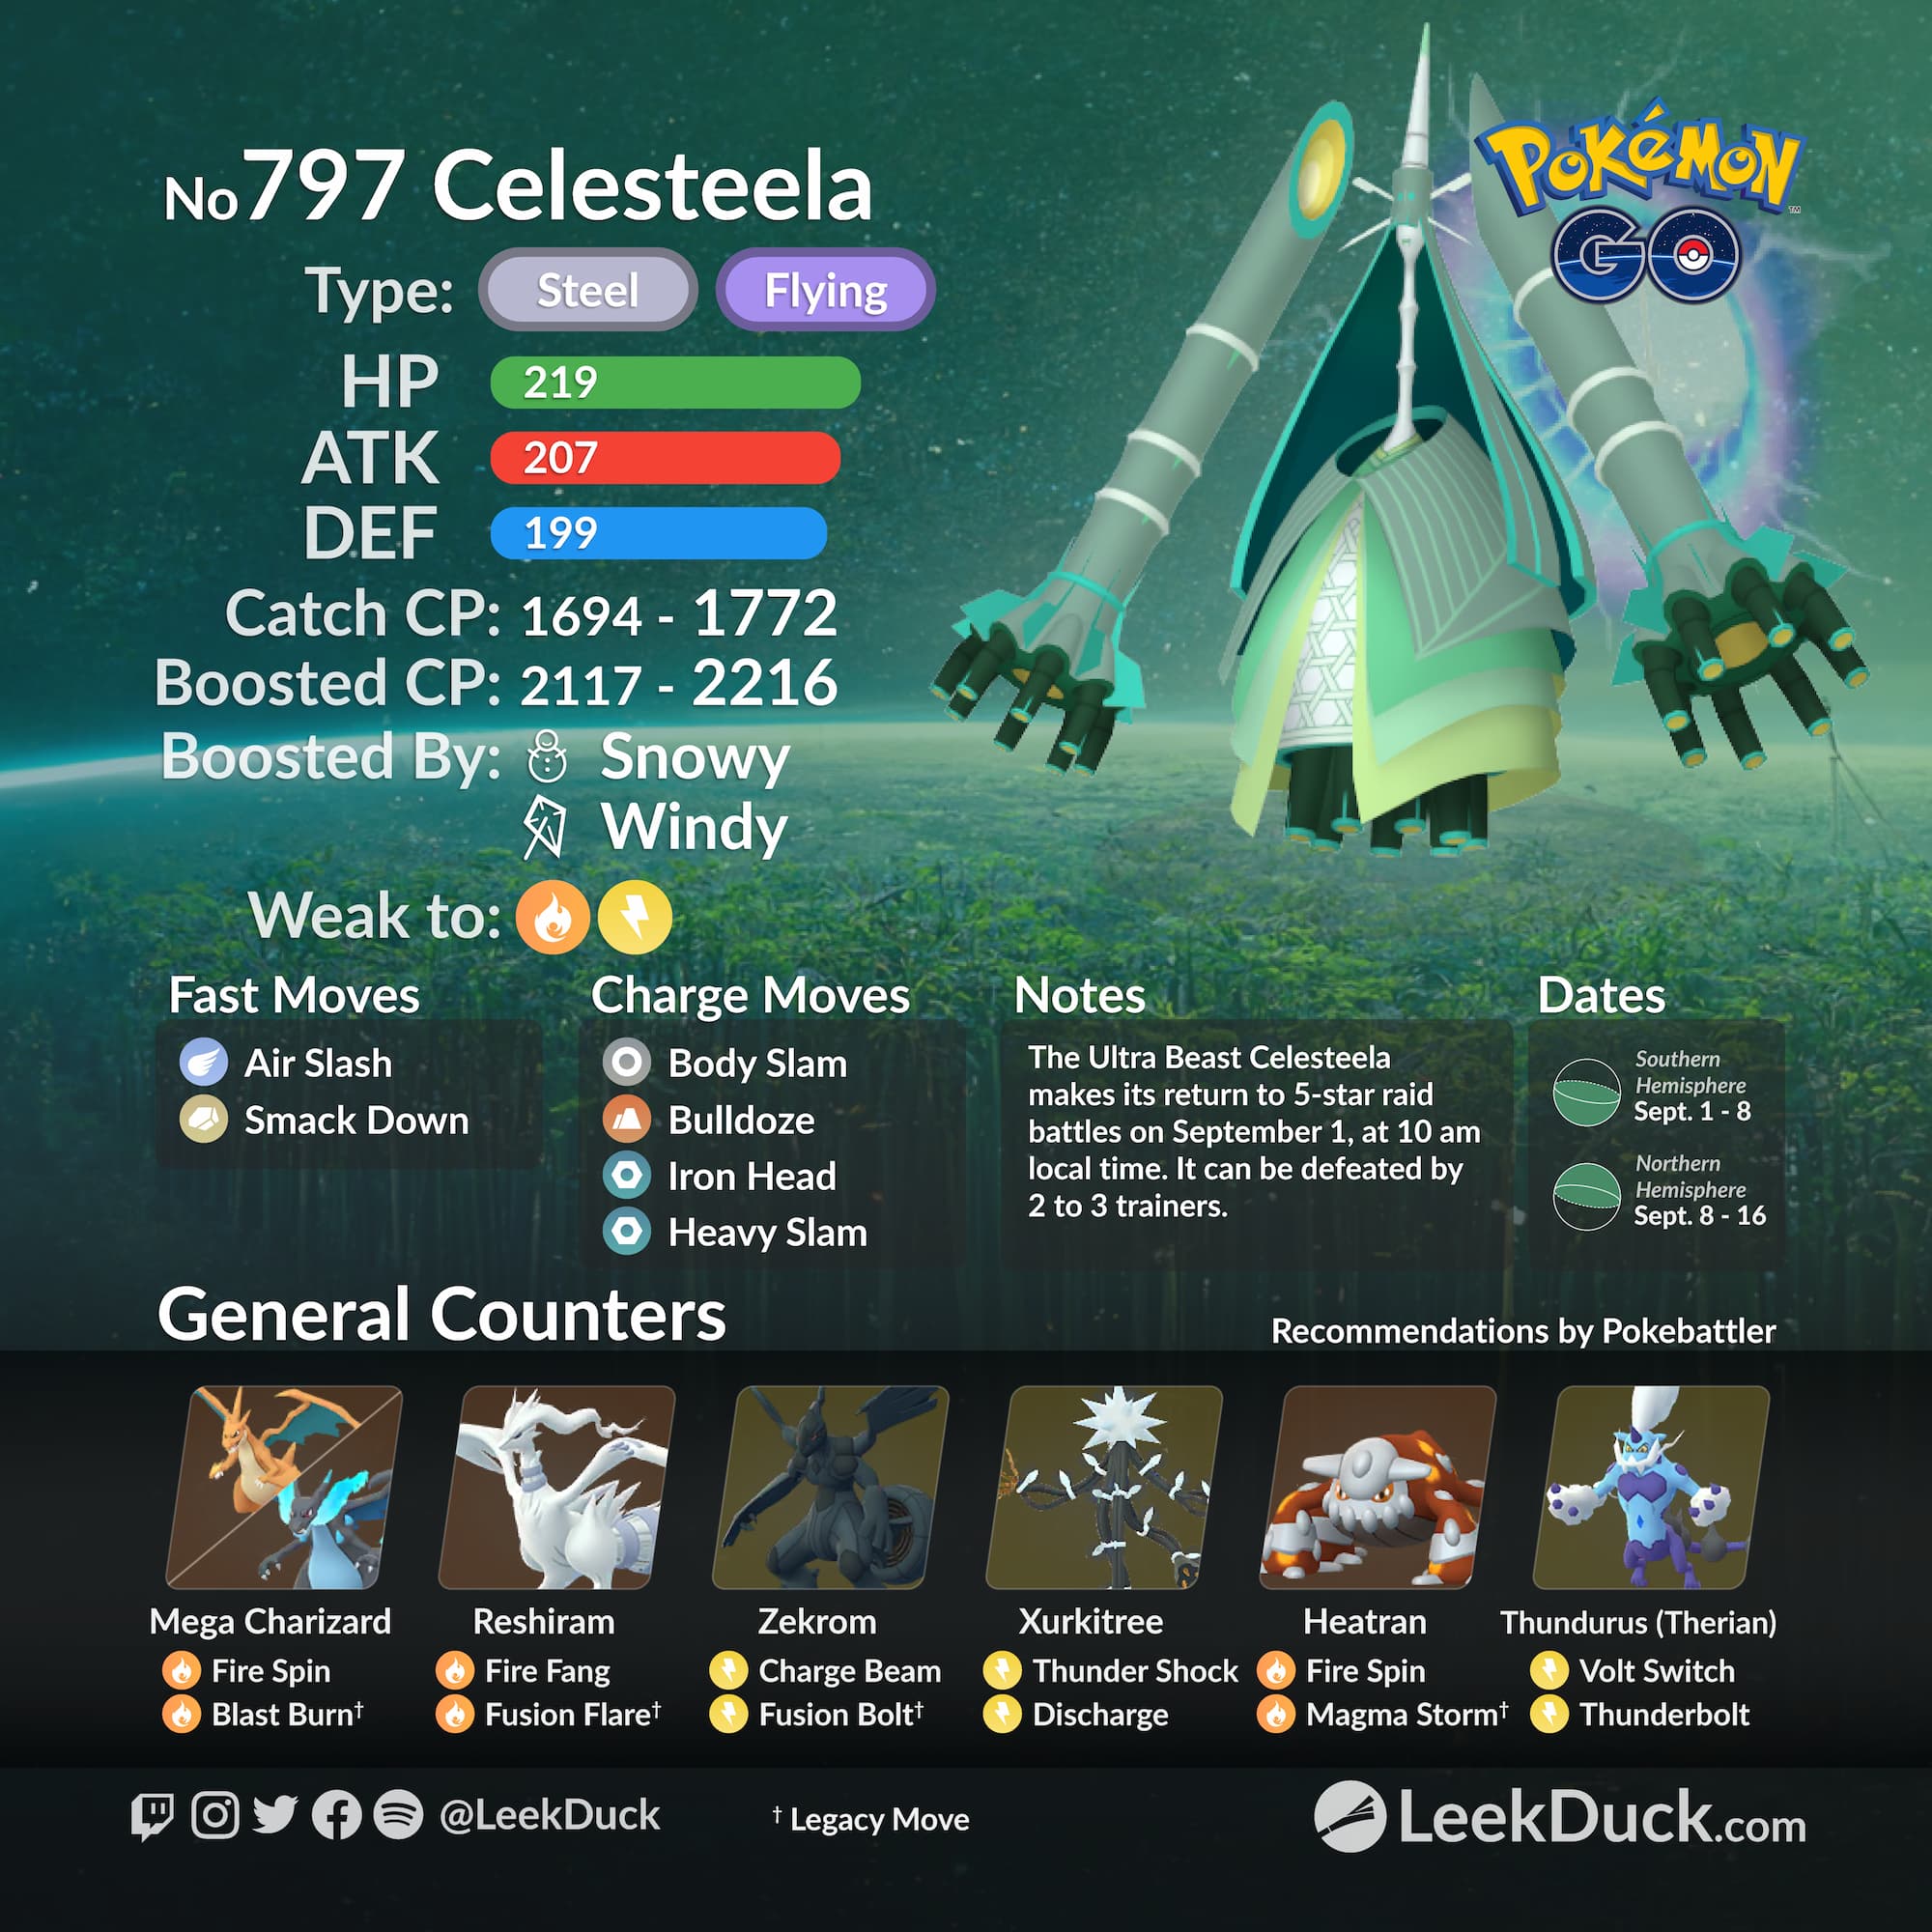 Is Shiny Kartana and Shiny Celesteela available in Pokemon GO?